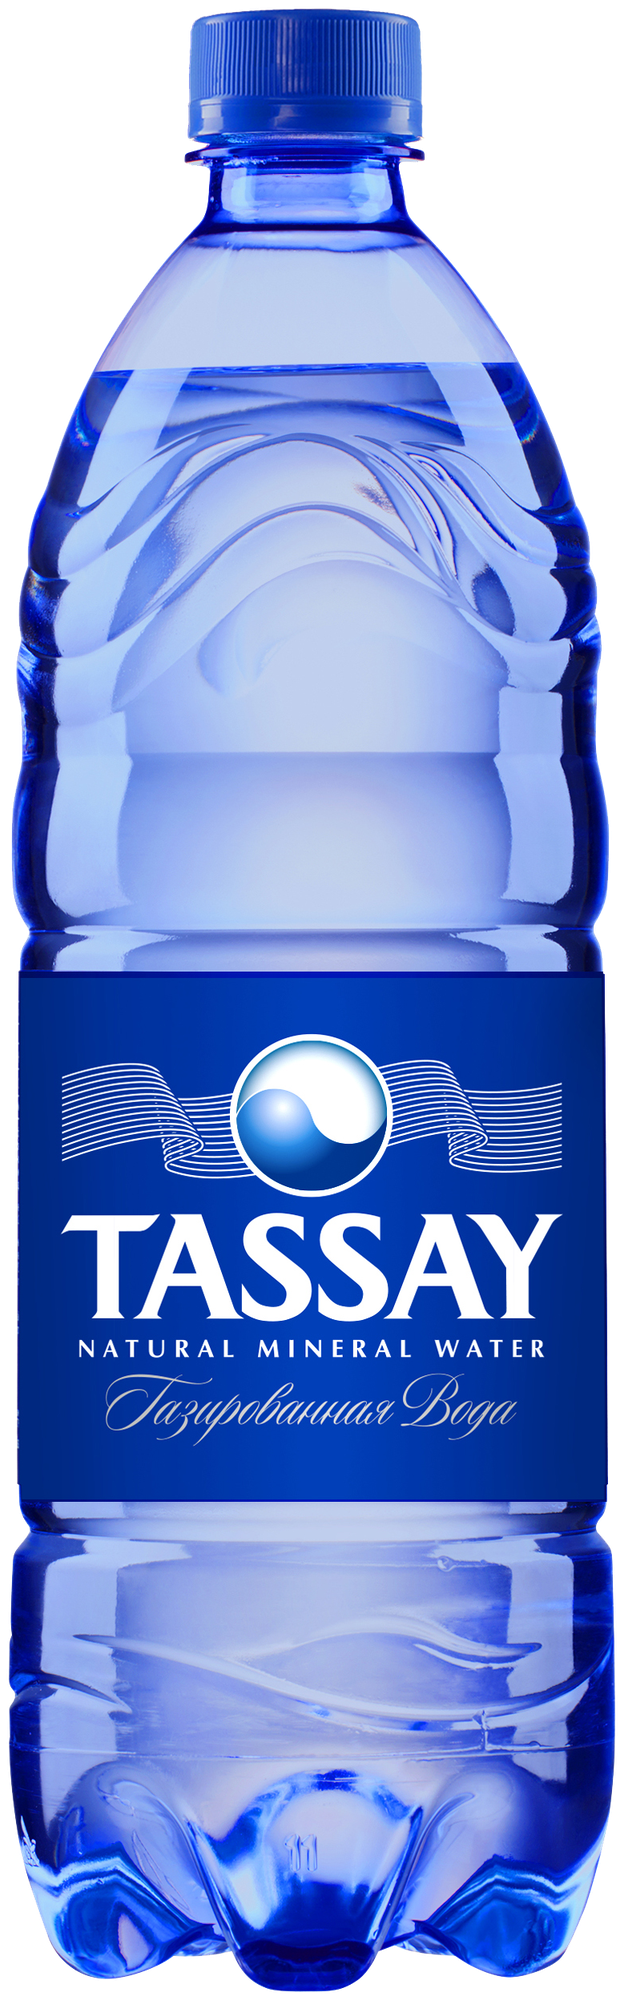 Вода минеральная TASSAY газированная, ПЭТ, 6 шт. по 1 л